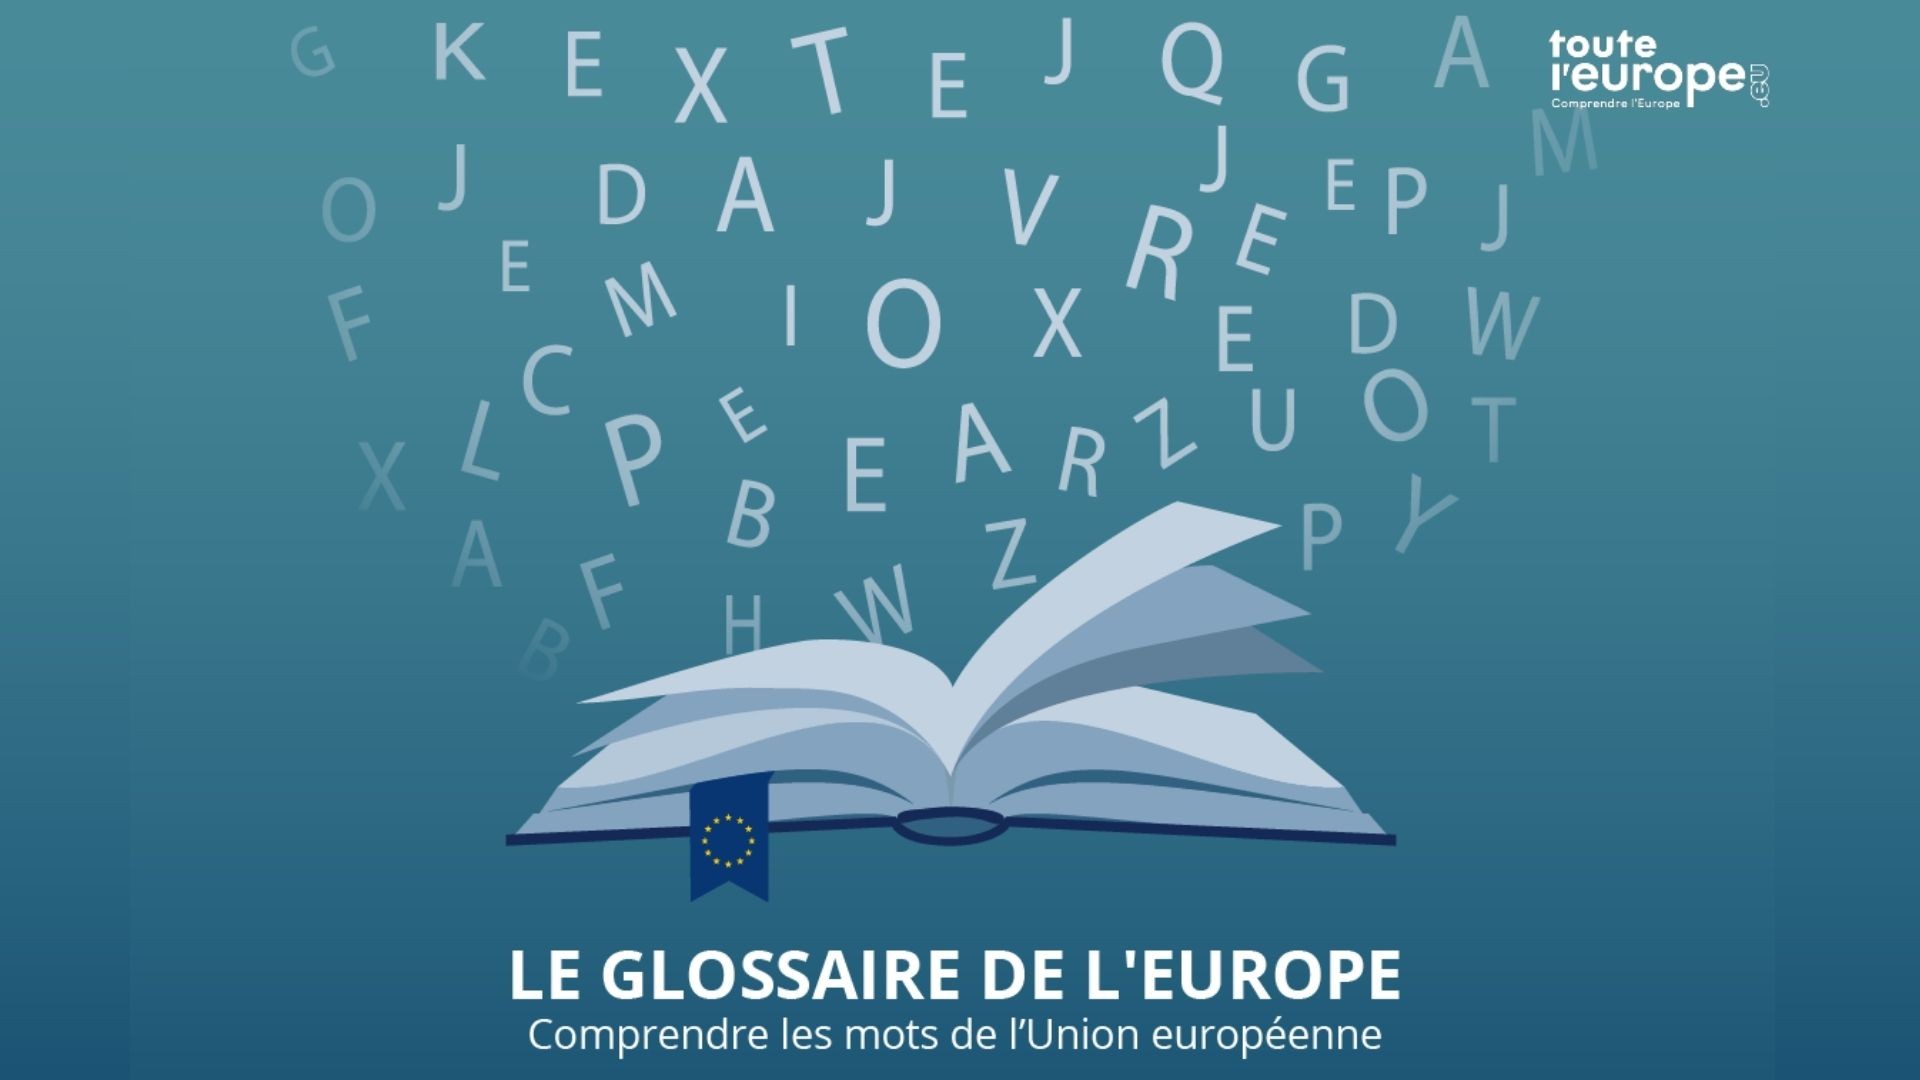 Le Glossaire de l’Europe